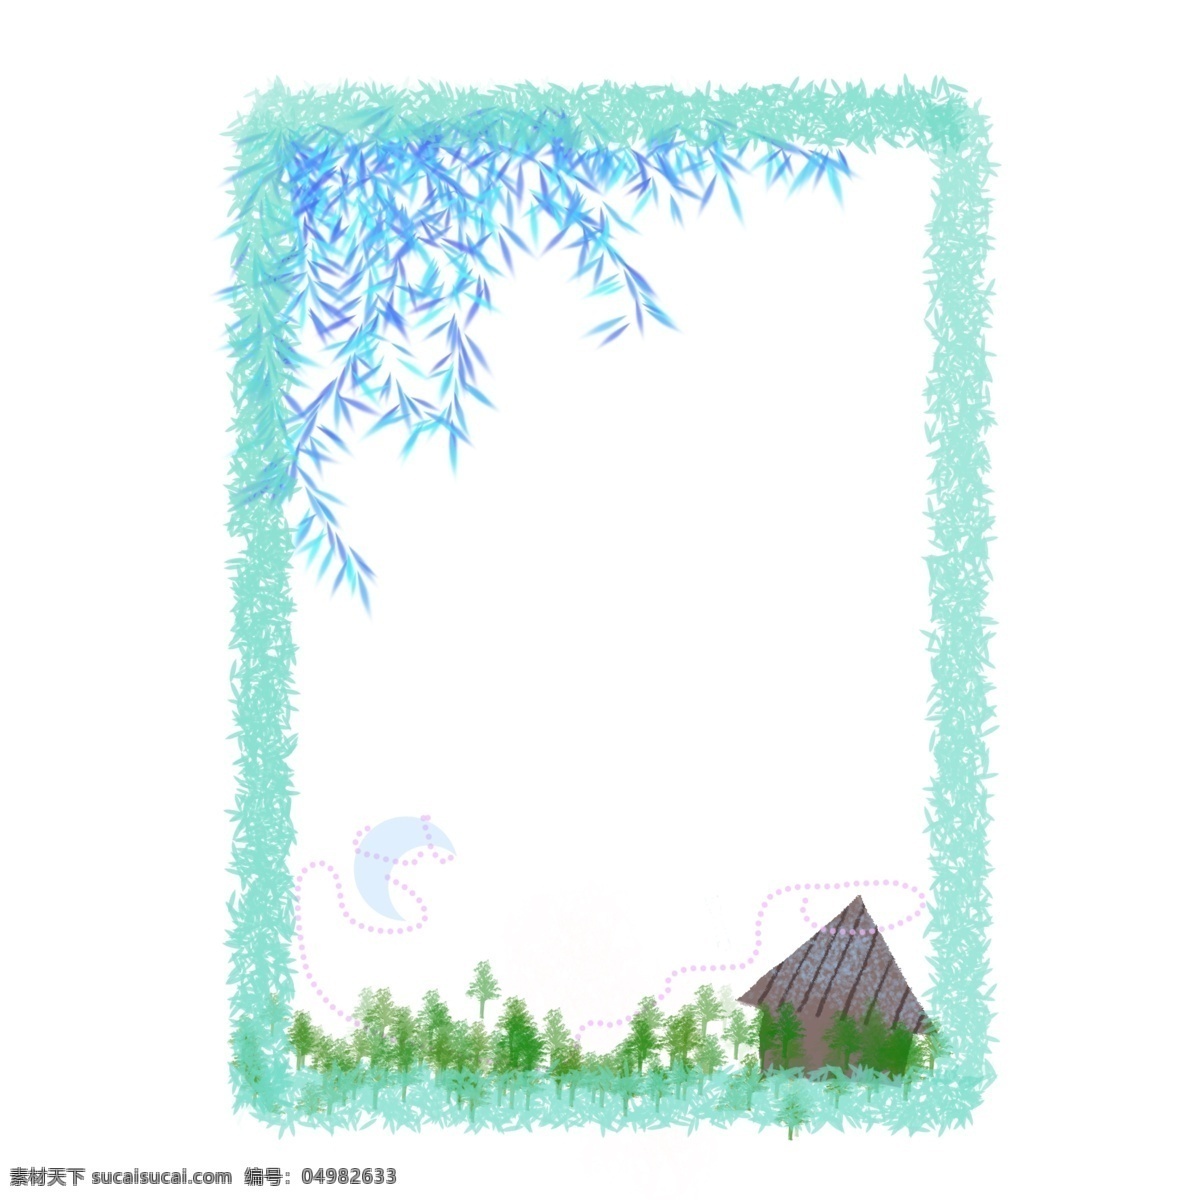 蓝色 植物 边框 元素 蓝色植物 装饰 卡通插画 草地 环境 建筑几何房屋 彩色 叶子 春季 季节 变化